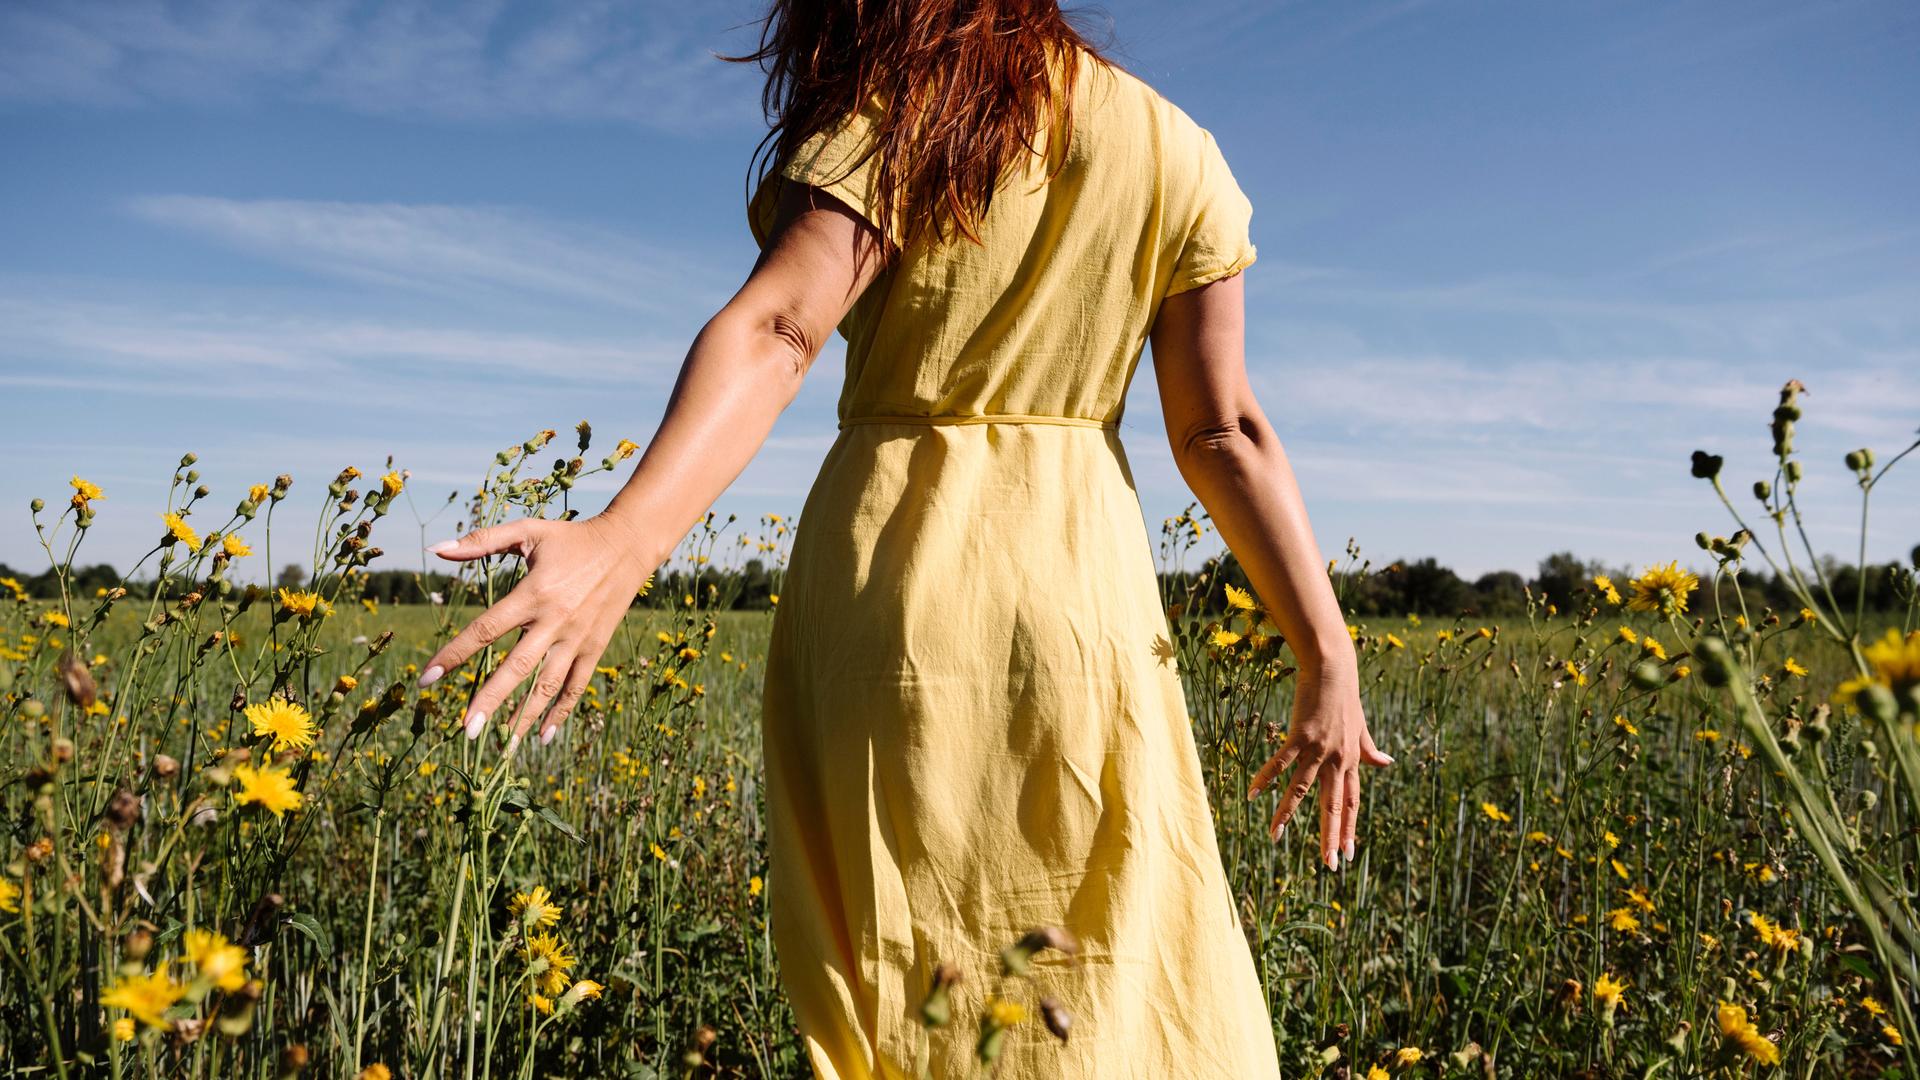 Fau im gelben Kleid läuft über eine Blumenwiese. 